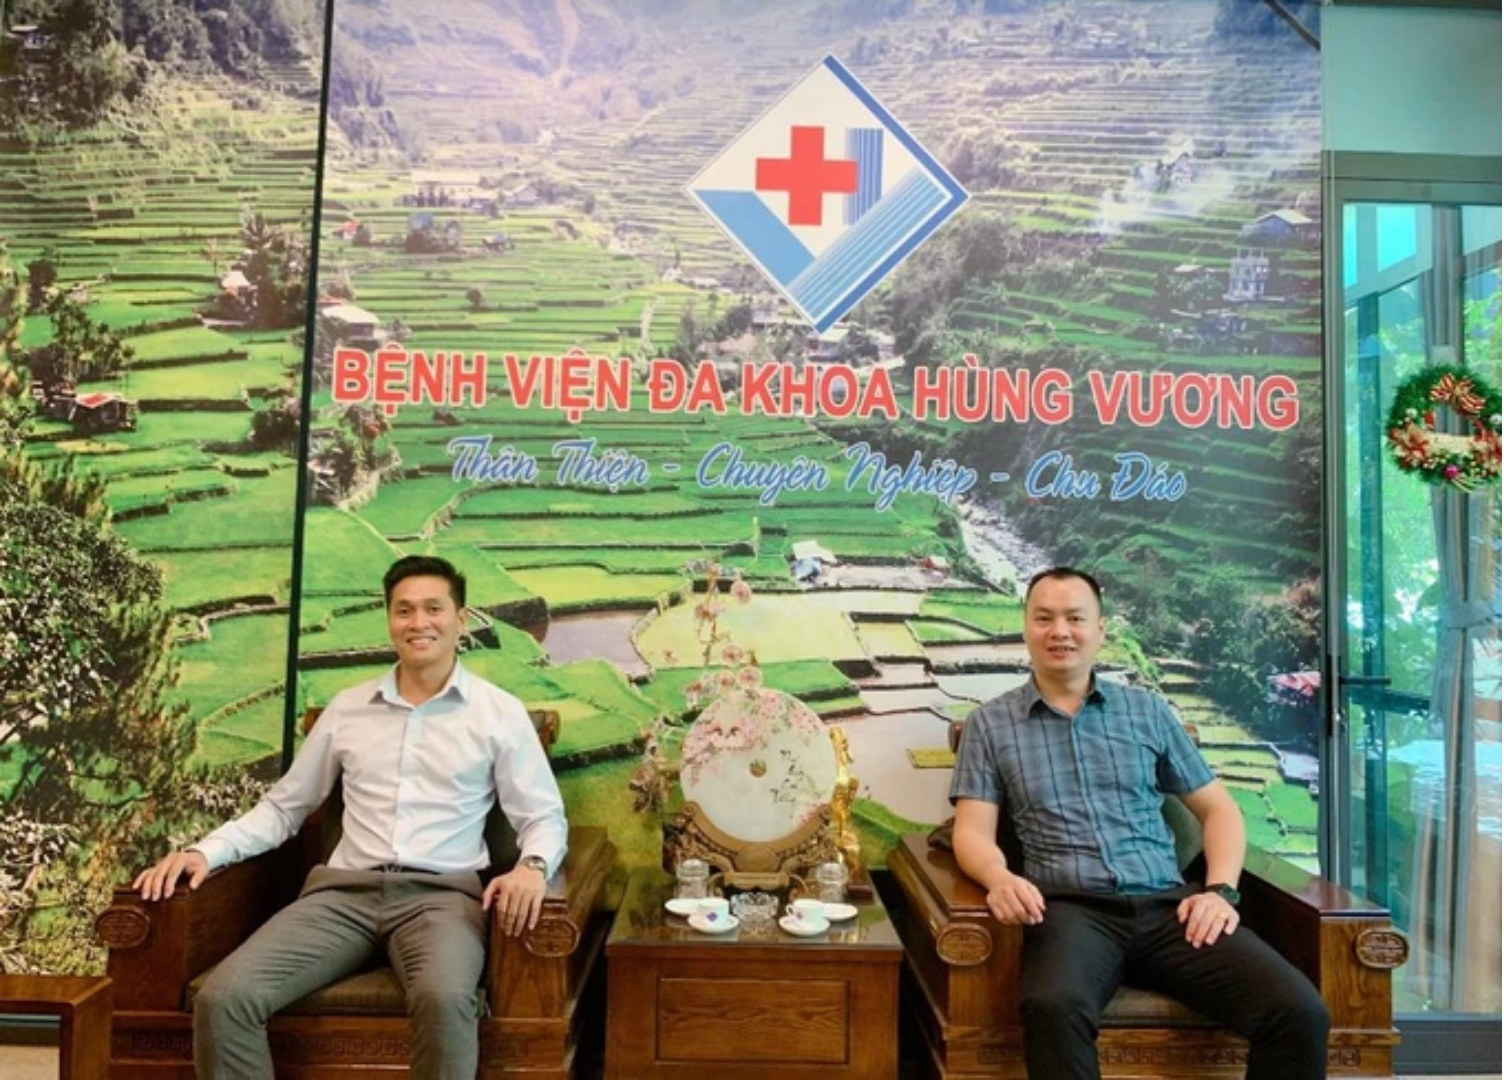 Bệnh viện Hùng Vương và Mason Việt Nam - Hợp tác để mang những sản phẩm tốt đến tay người tiêu dùng.